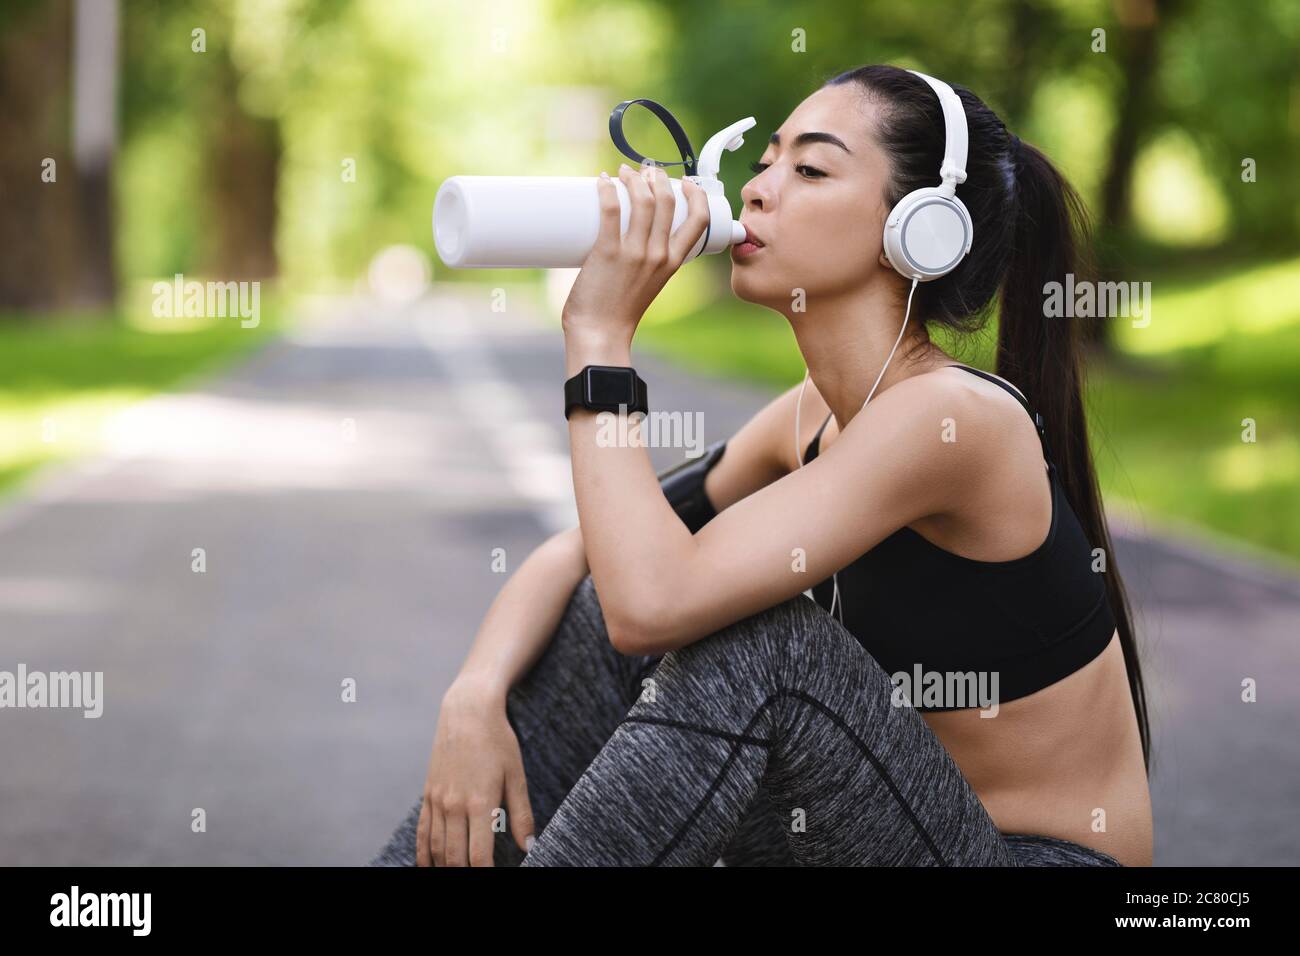 Assetato dopo l'allenamento. Giovane ragazza asiatica che beve acqua, riposandosi dopo gli outsoors di jogging Foto Stock